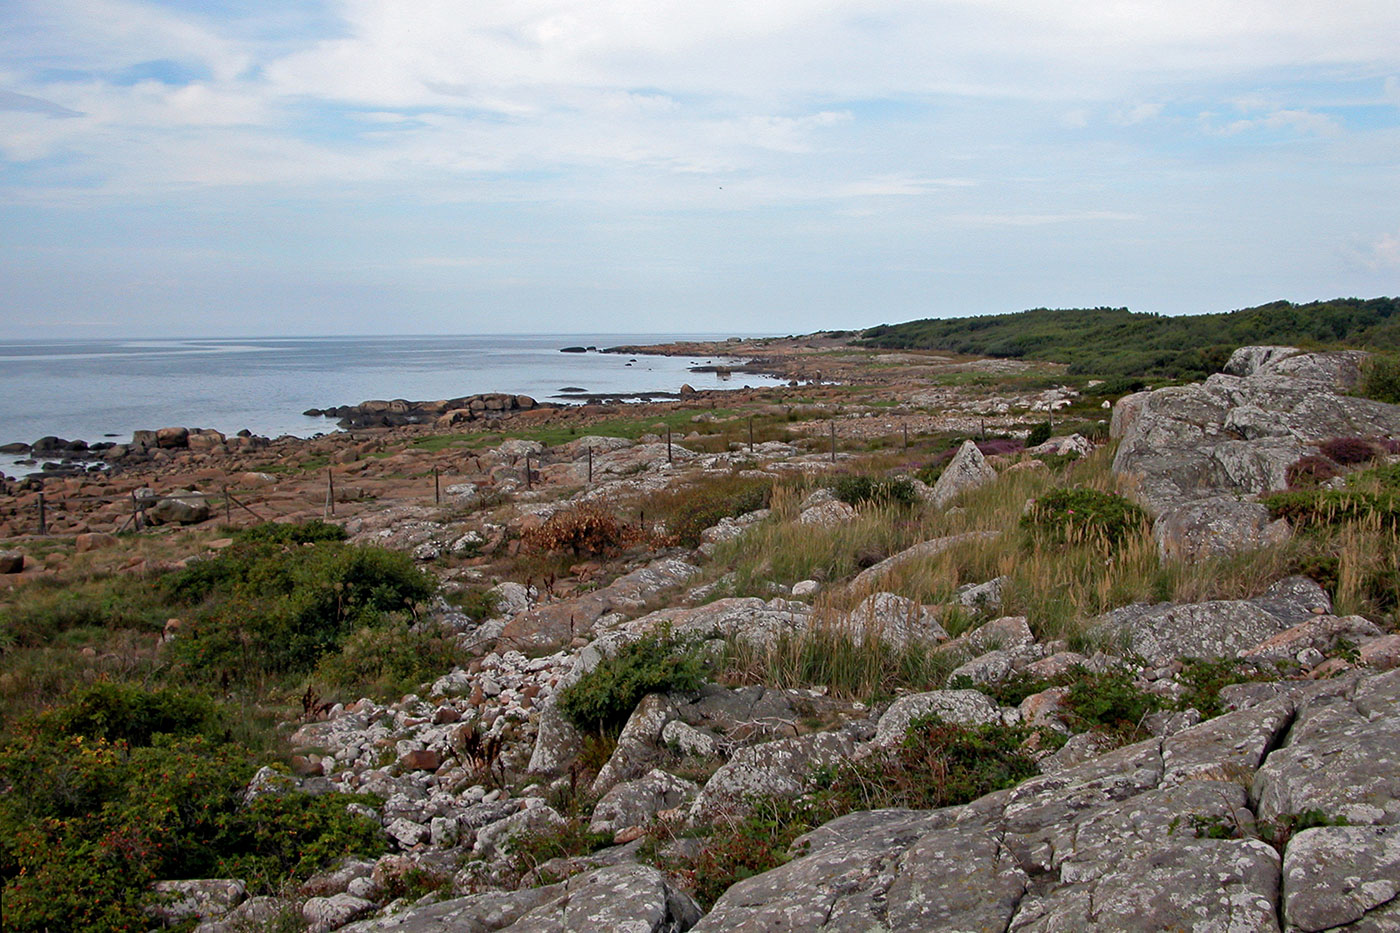 Vy över klippor och stenstrand vid naturreservatet i Steninge